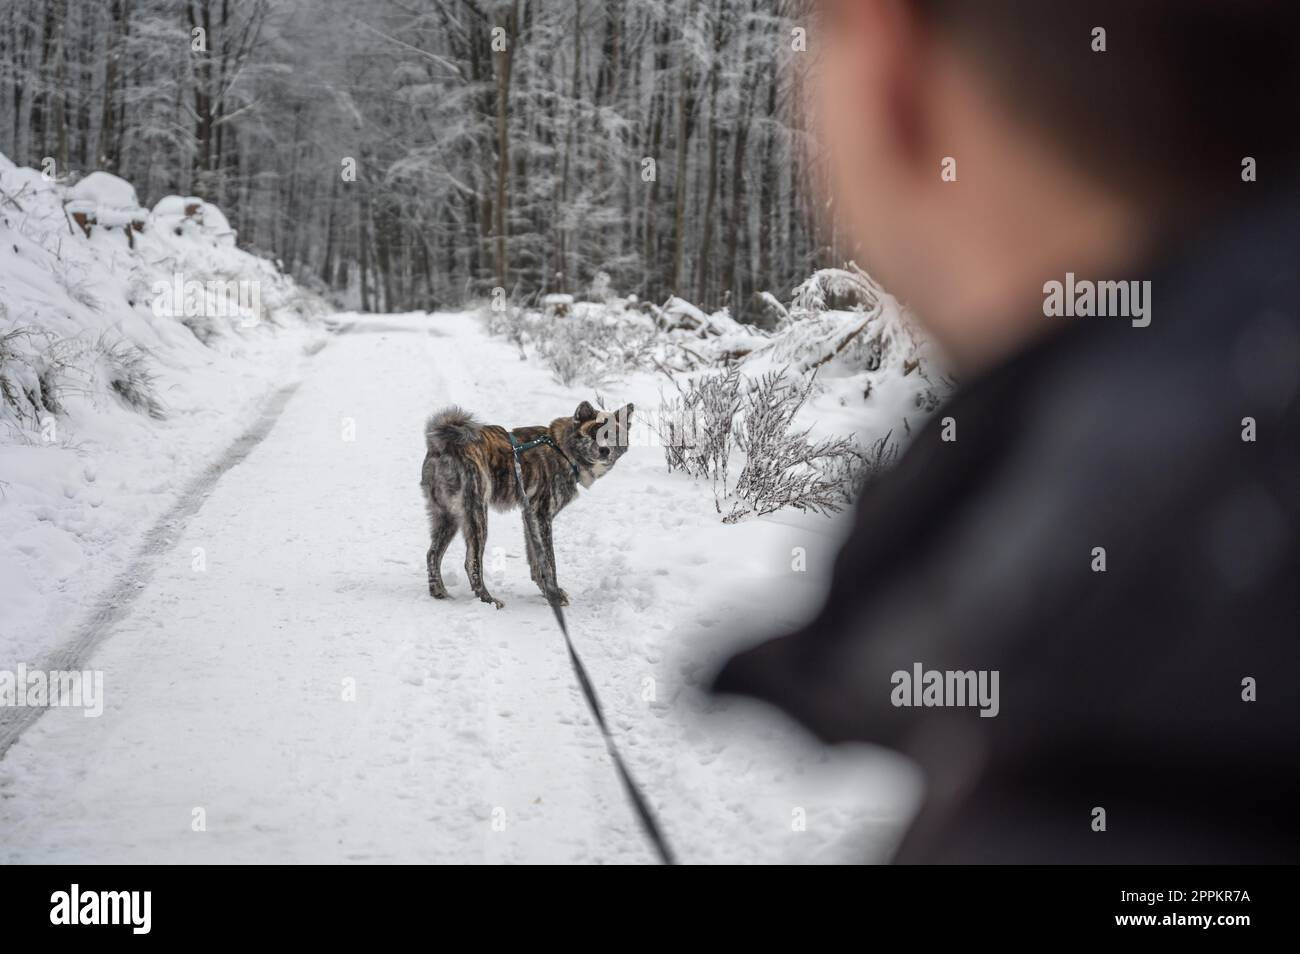 El hombre joven con el pelo castaño corto camina su perro akita inu de color gris en el bosque durante el invierno con mucha nieve, ambos mirándose el uno al otro, se centran en el fondo Foto de stock